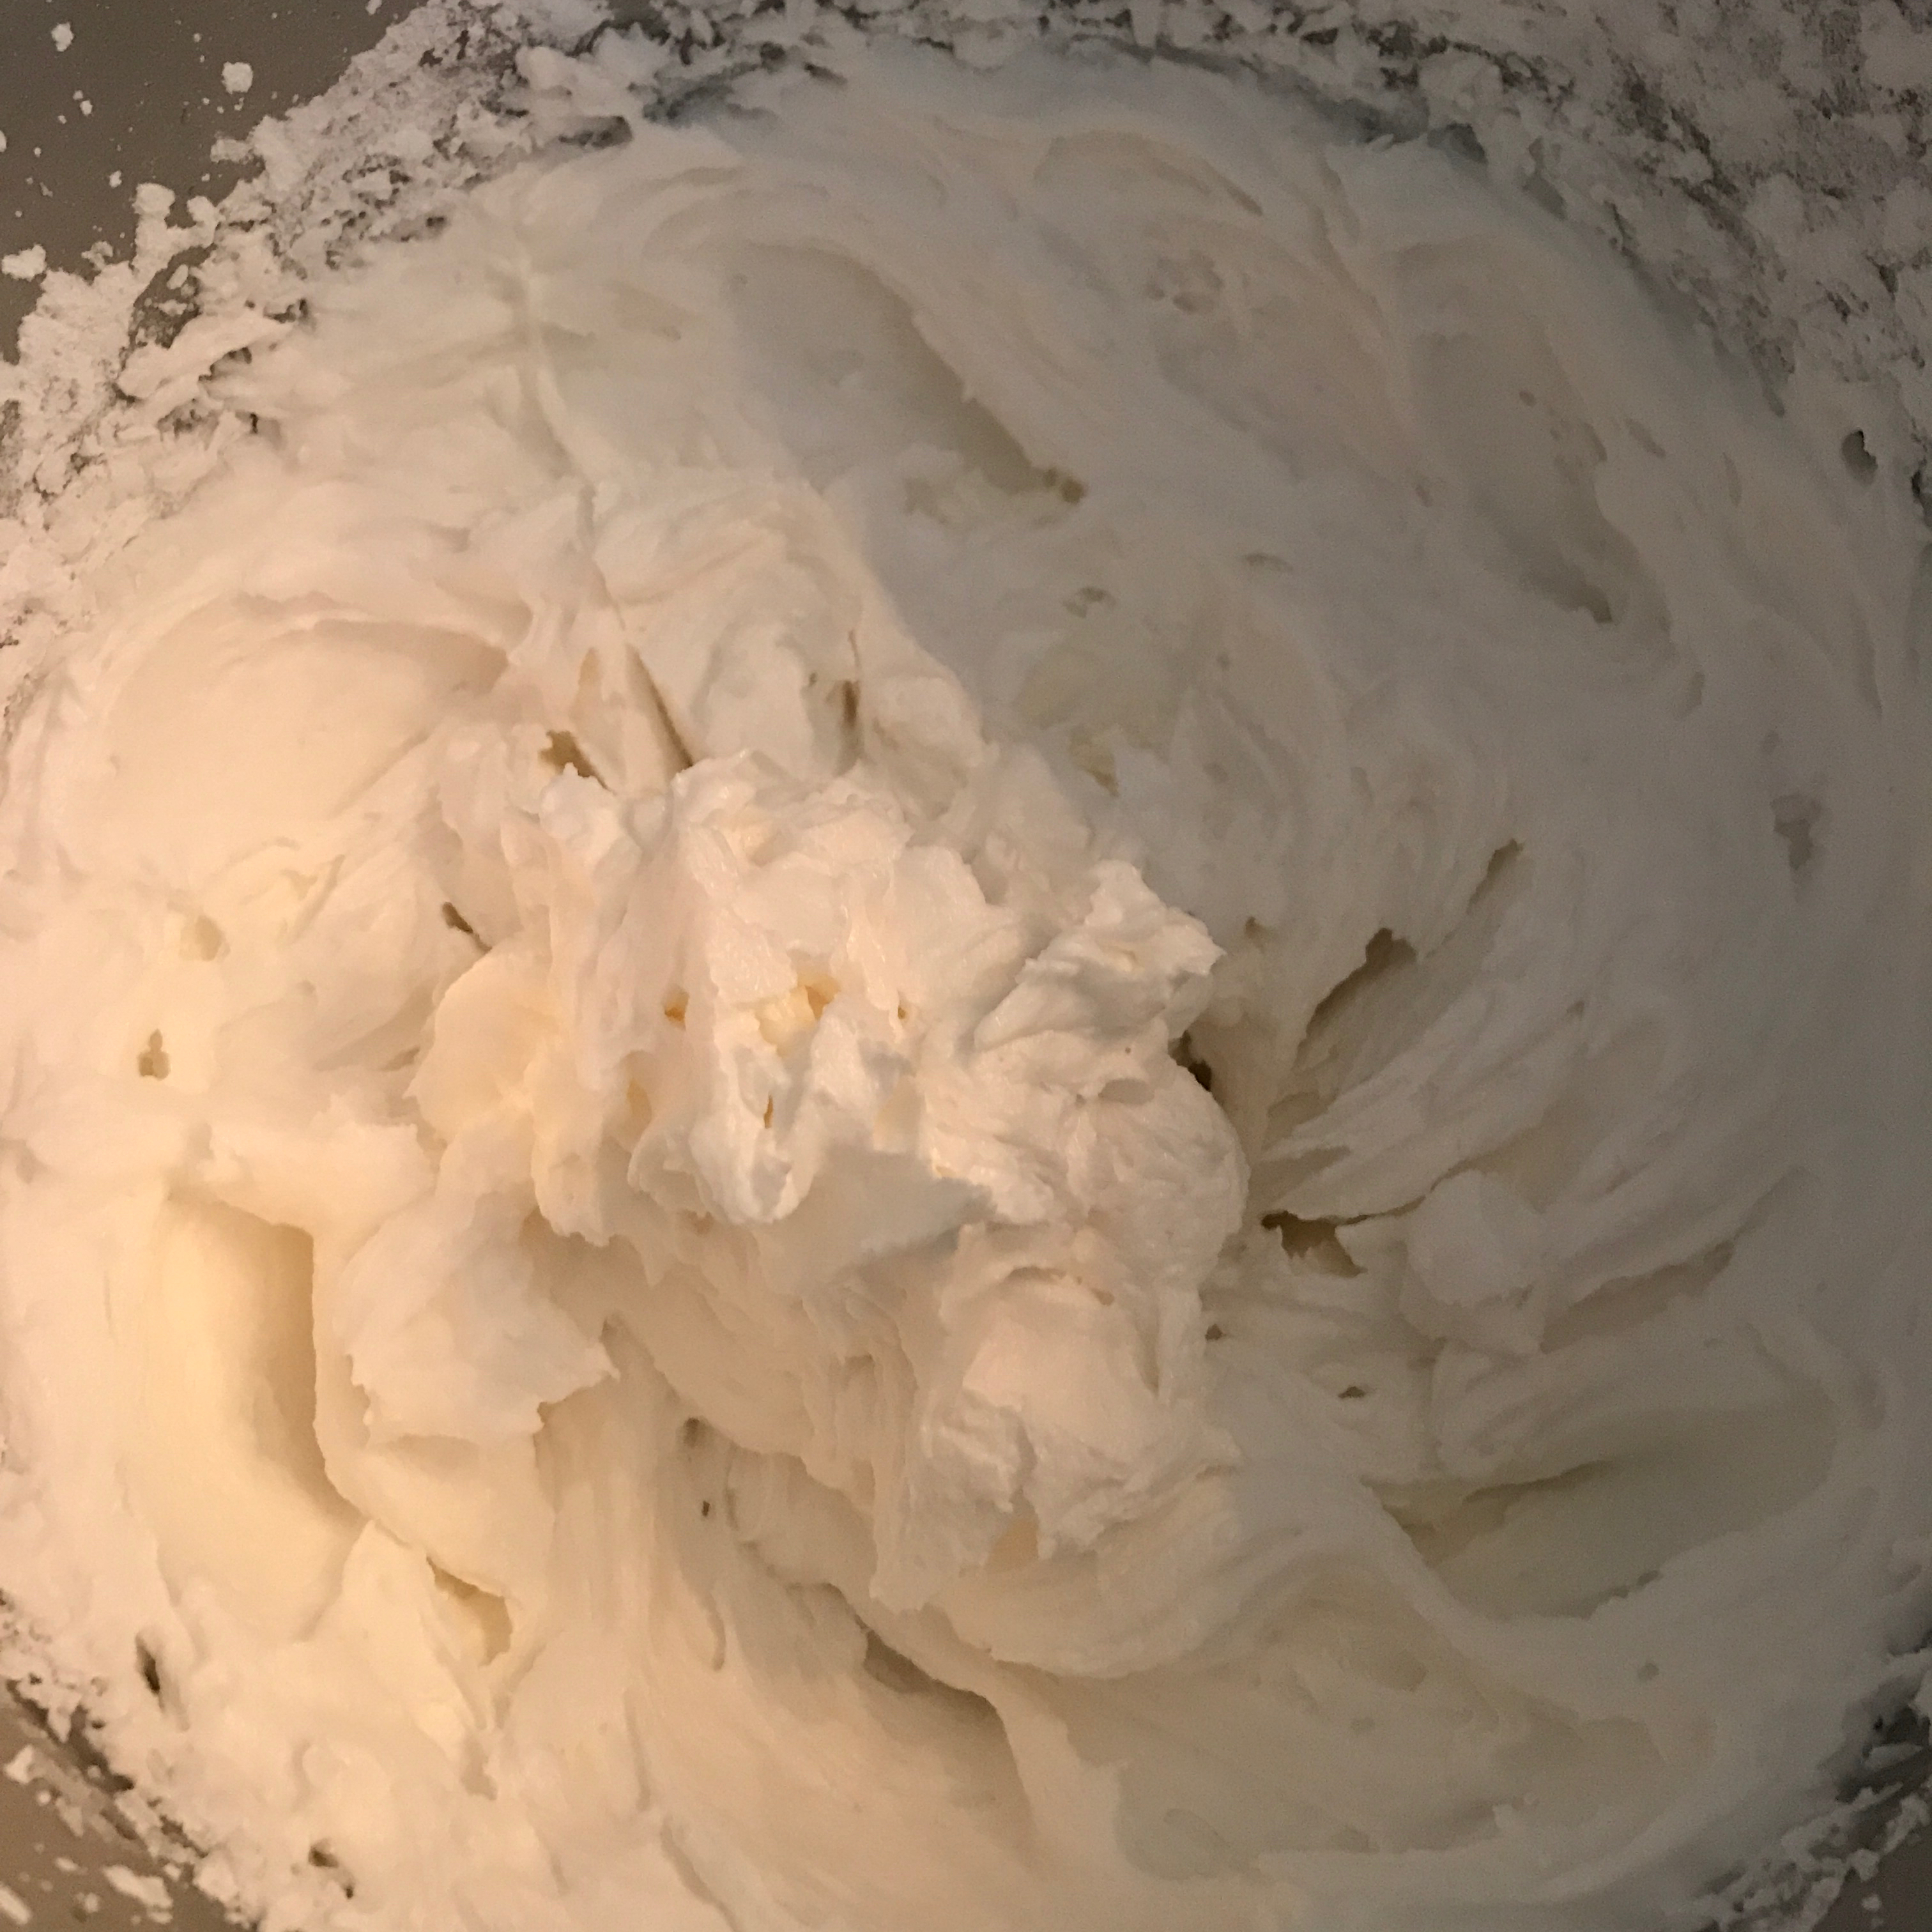 Holland Cream (White Cream Filling) 